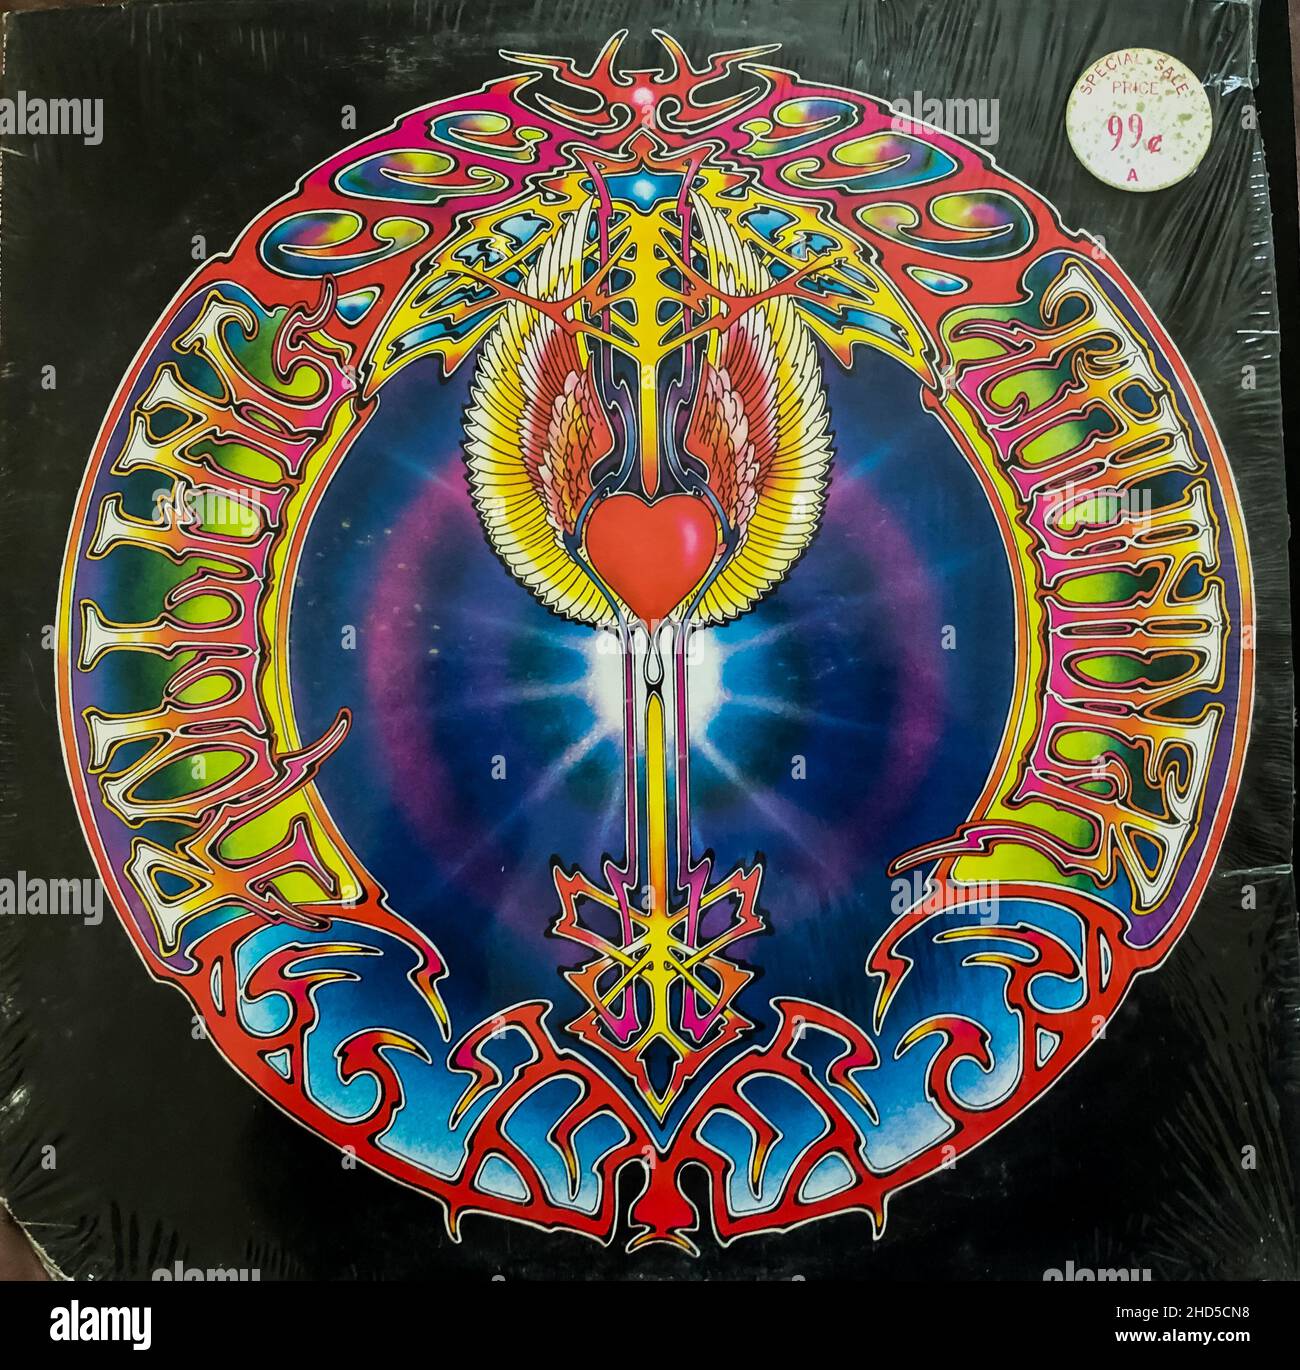 New York, NY, Rock Album copertina, musica 1970s, stile psichedelico, album classici in vinile rock Foto Stock